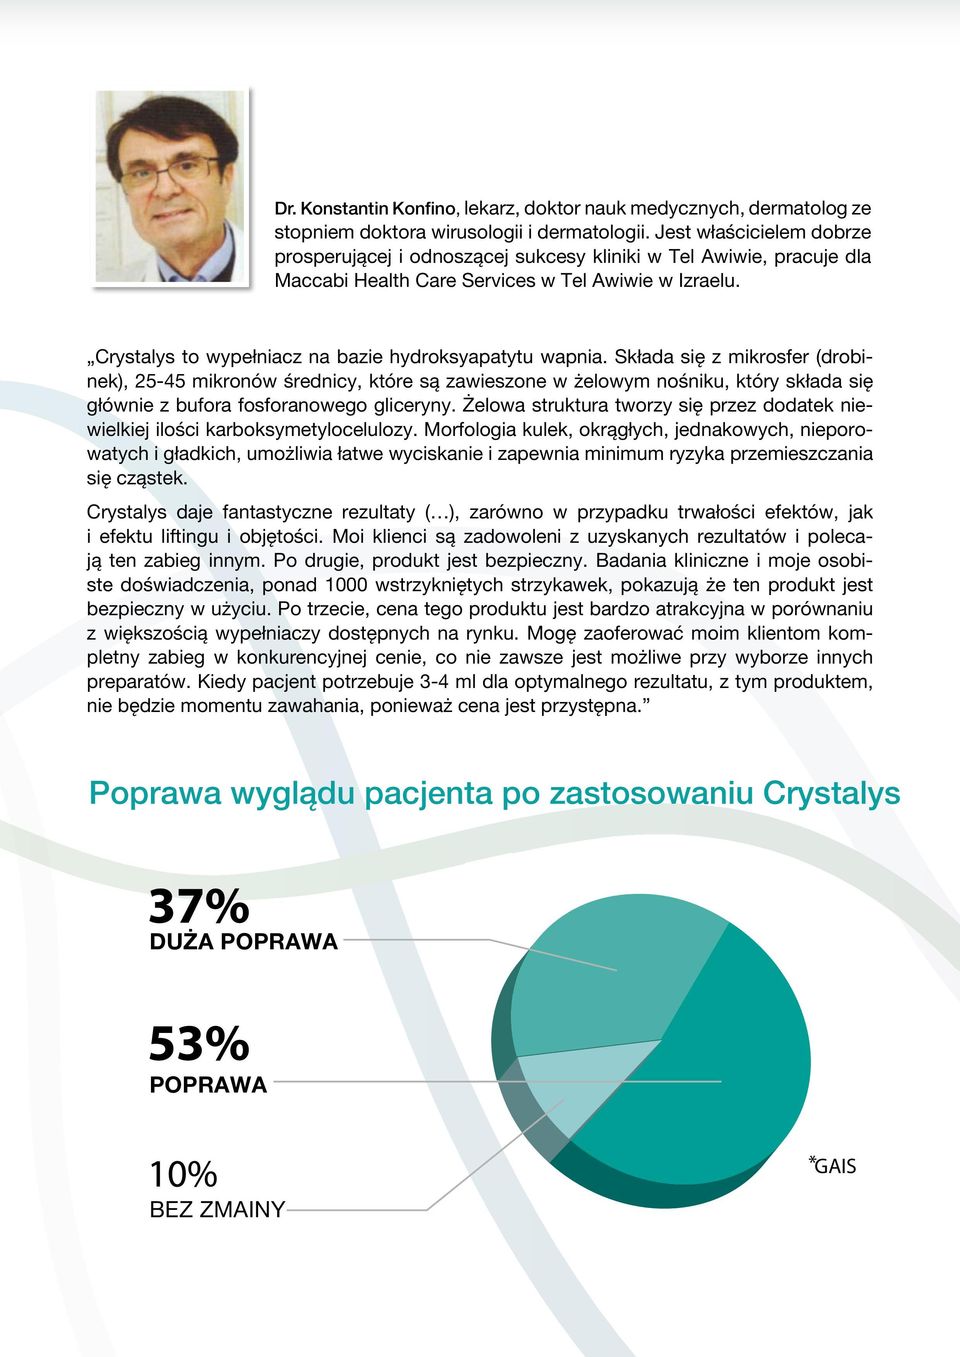 Crystalys to wypełniacz na bazie hydroksyapatytu wapnia.